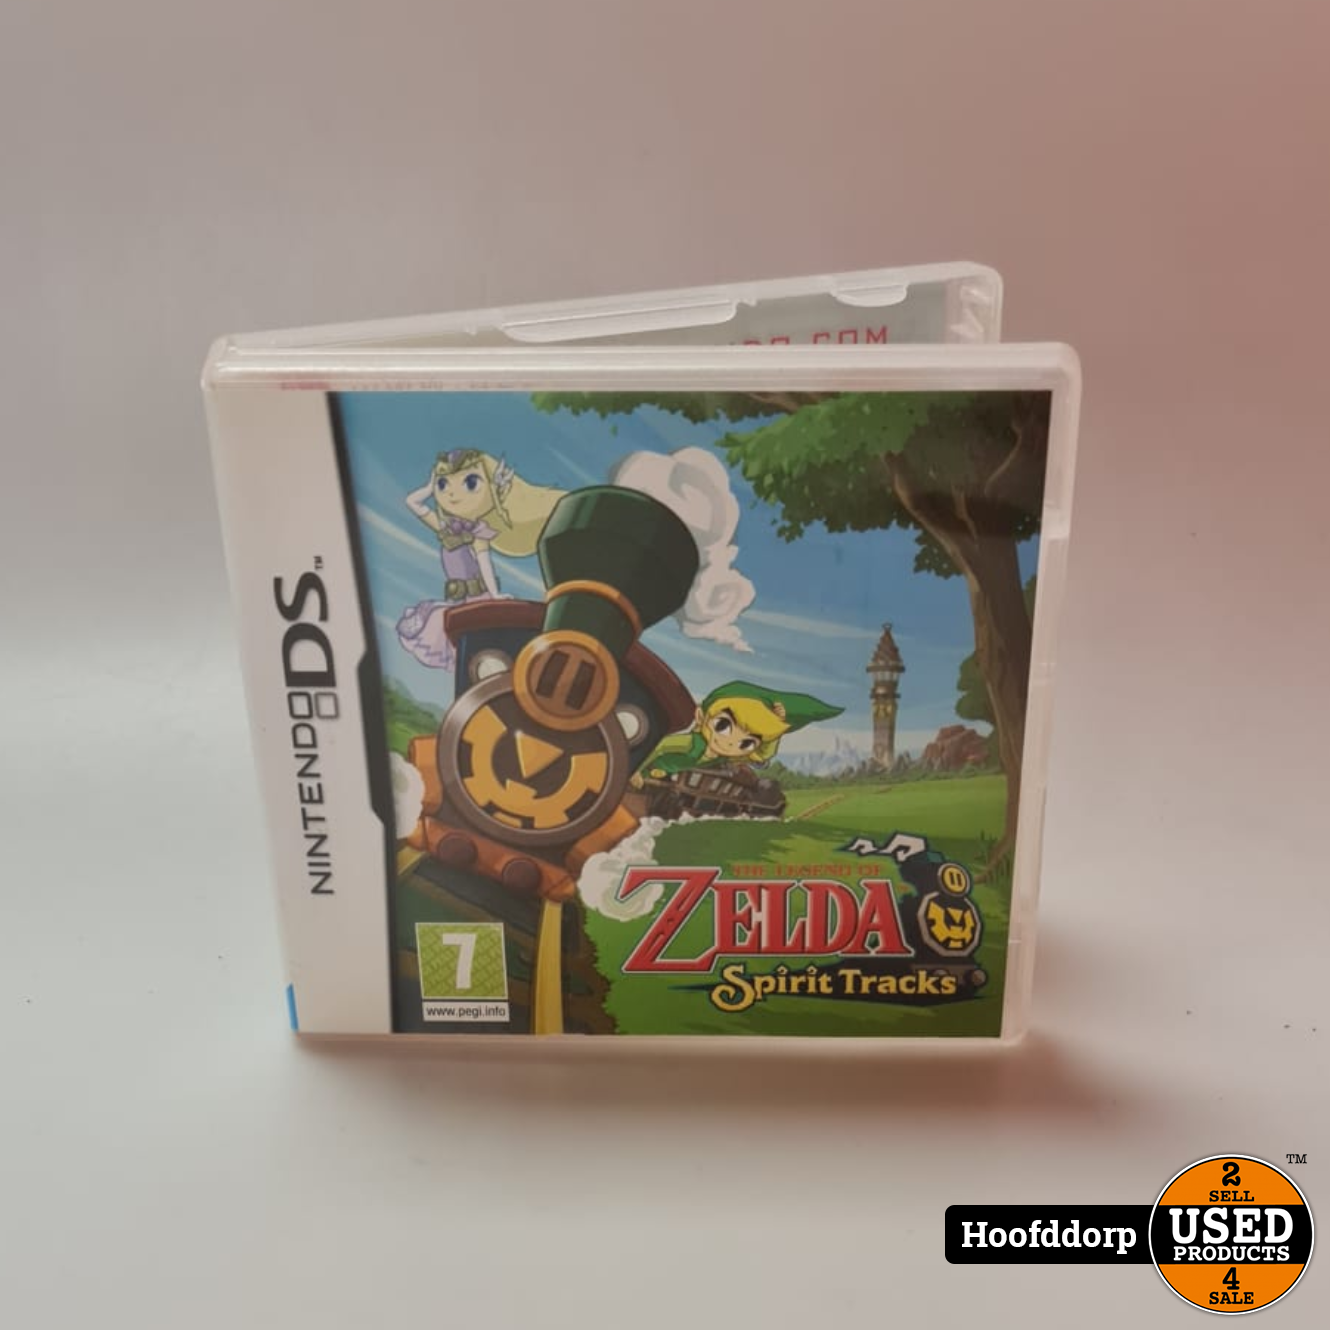 zoet Grootte Regeren Nintendo DS game : The legend Of Zelda Spirit Tracks ( zonder boekjes) -  Used Products Hoofddorp